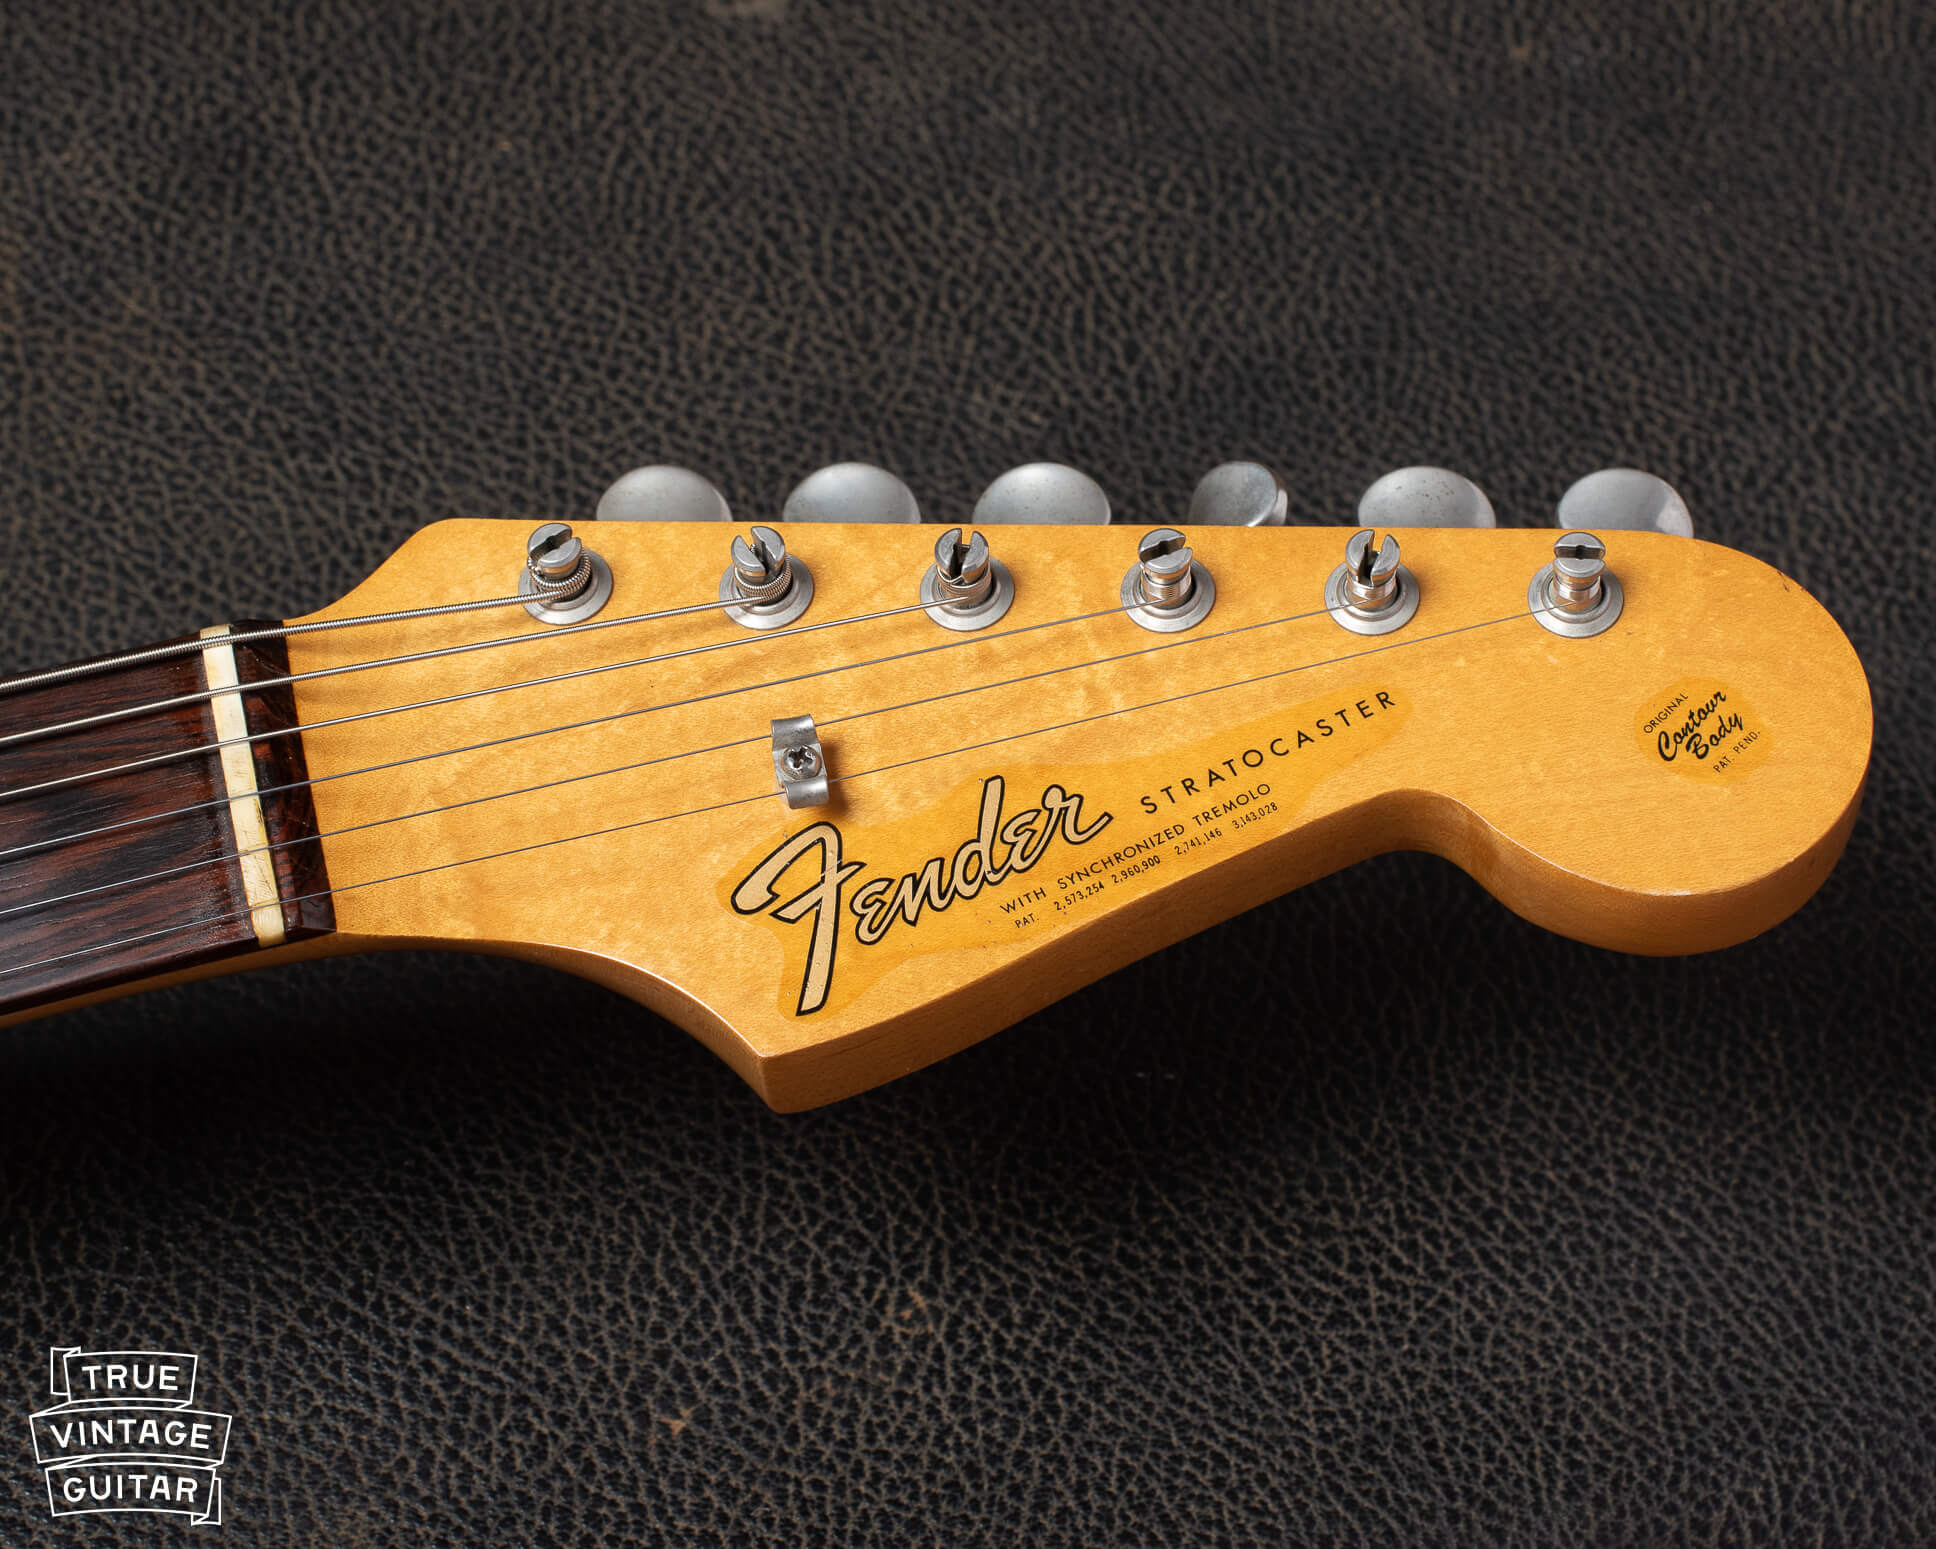 1965 Fender Stratocaster headstock logo